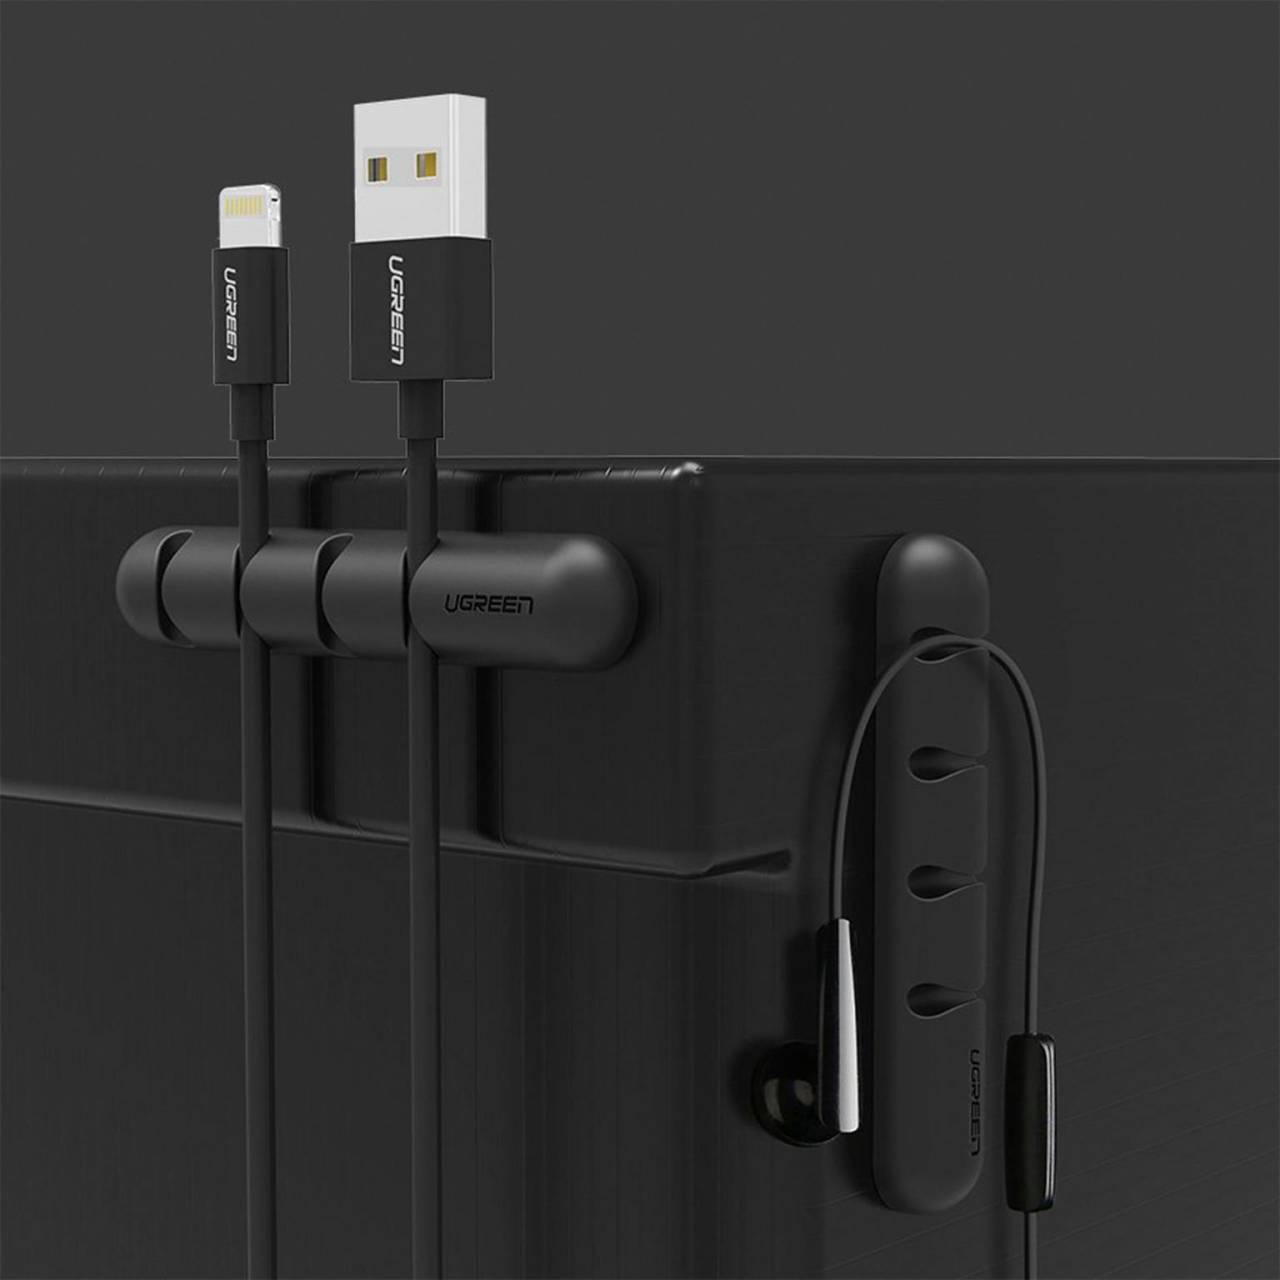 Ugreen Kabelorganisator – Selbstklebender Kabelhalter für Smartphone und andere Geräte, 2er Pack für je 4 Kabel